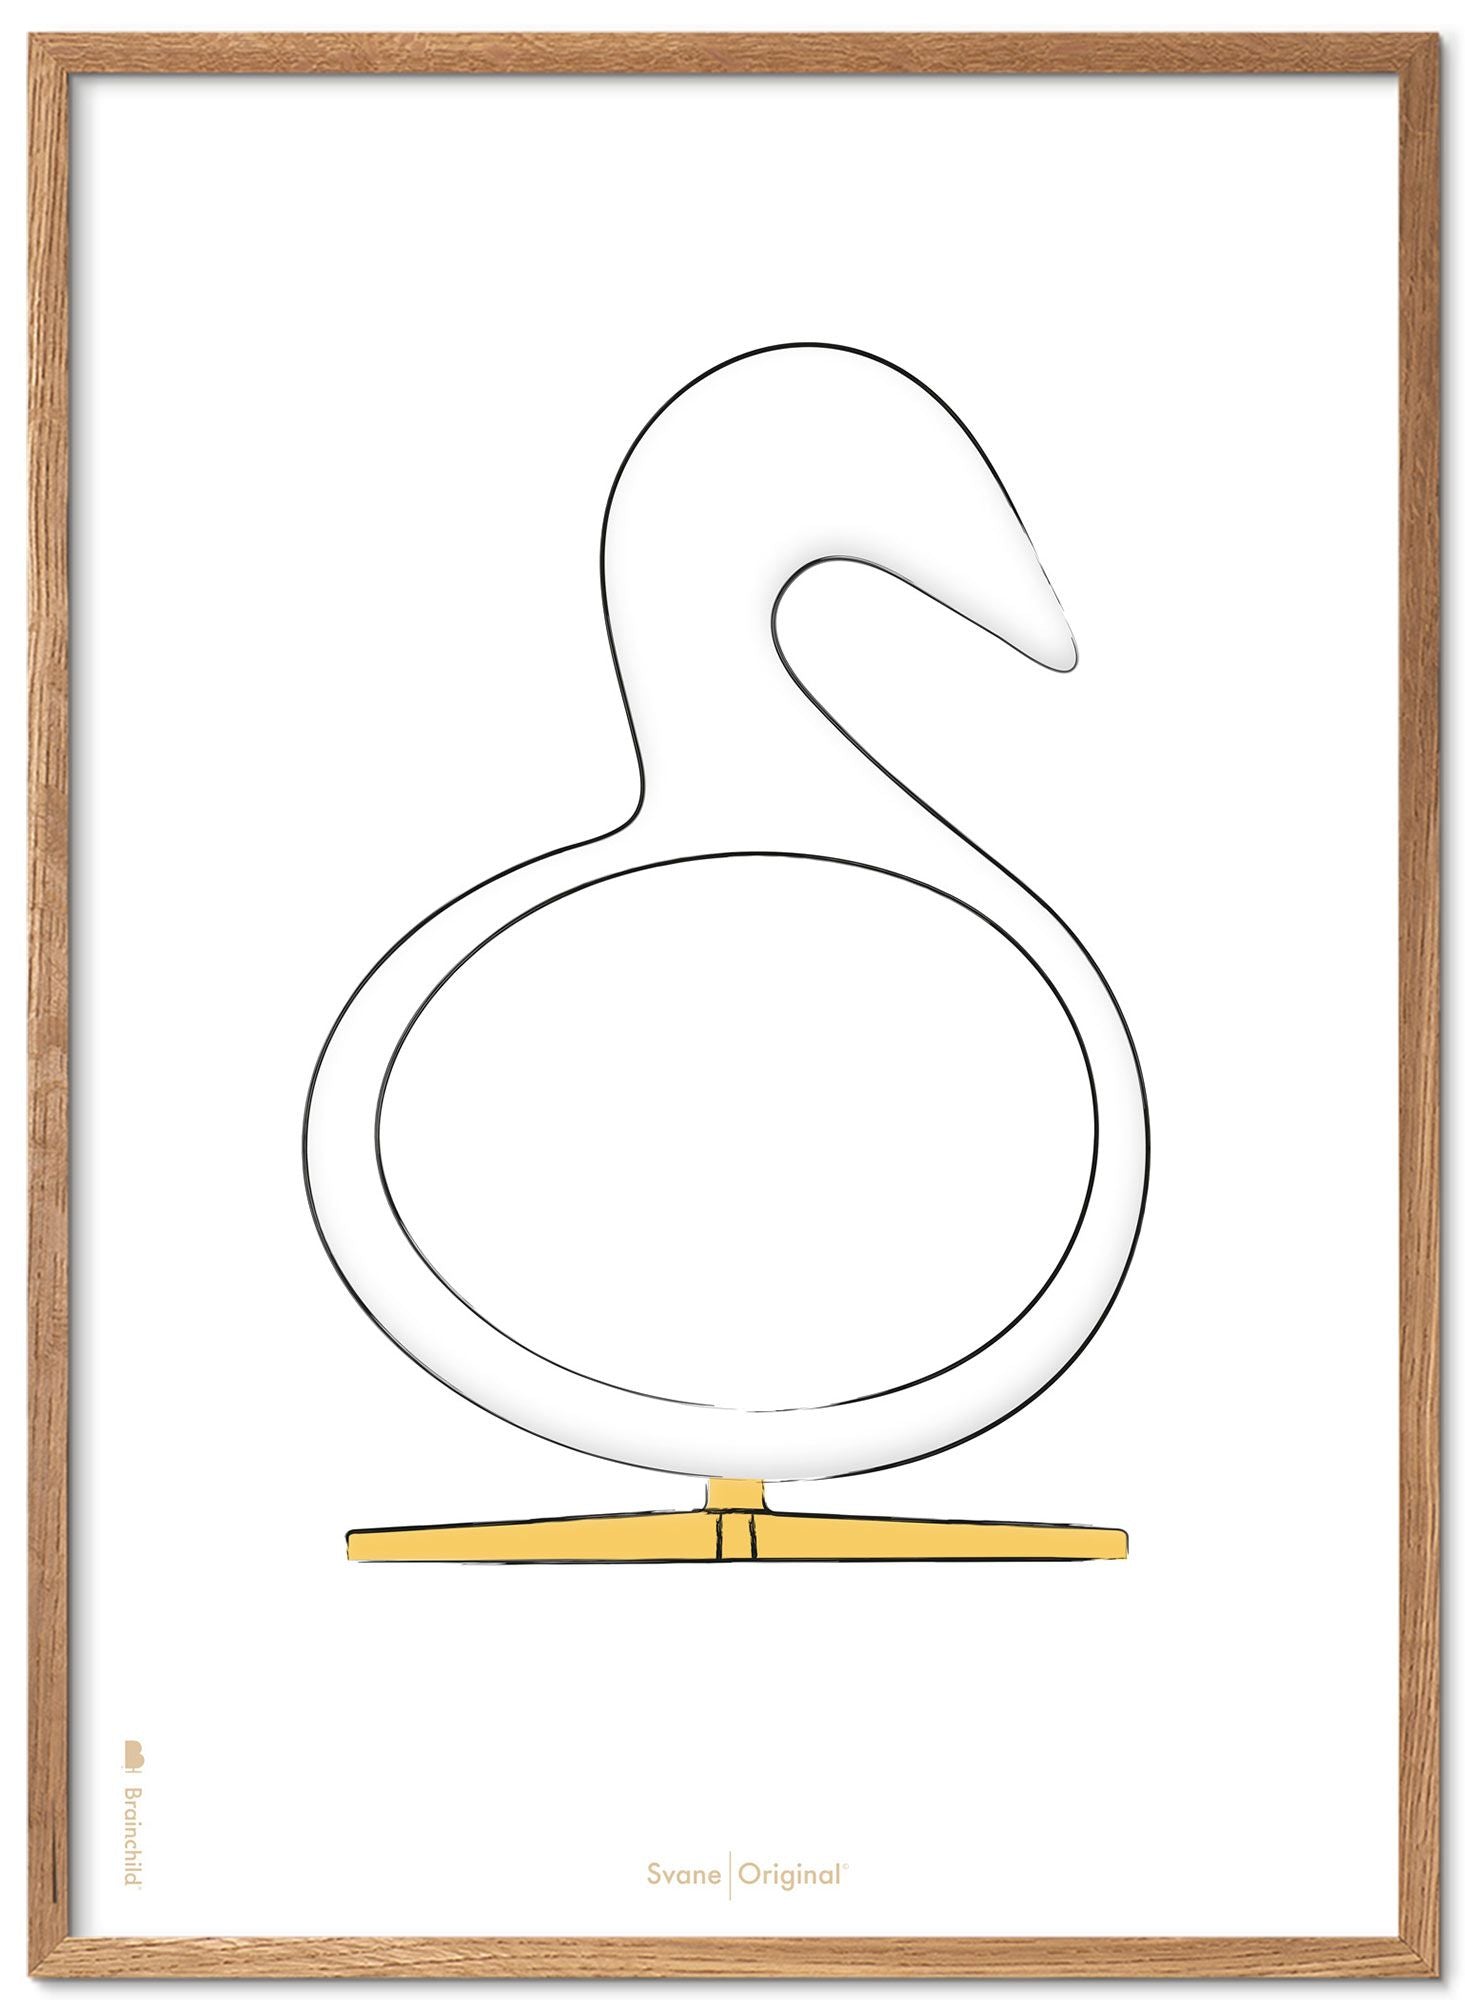 Marco de póster de boceto de diseño de Swan. Hecho de madera clara de 70x100 cm, fondo blanco